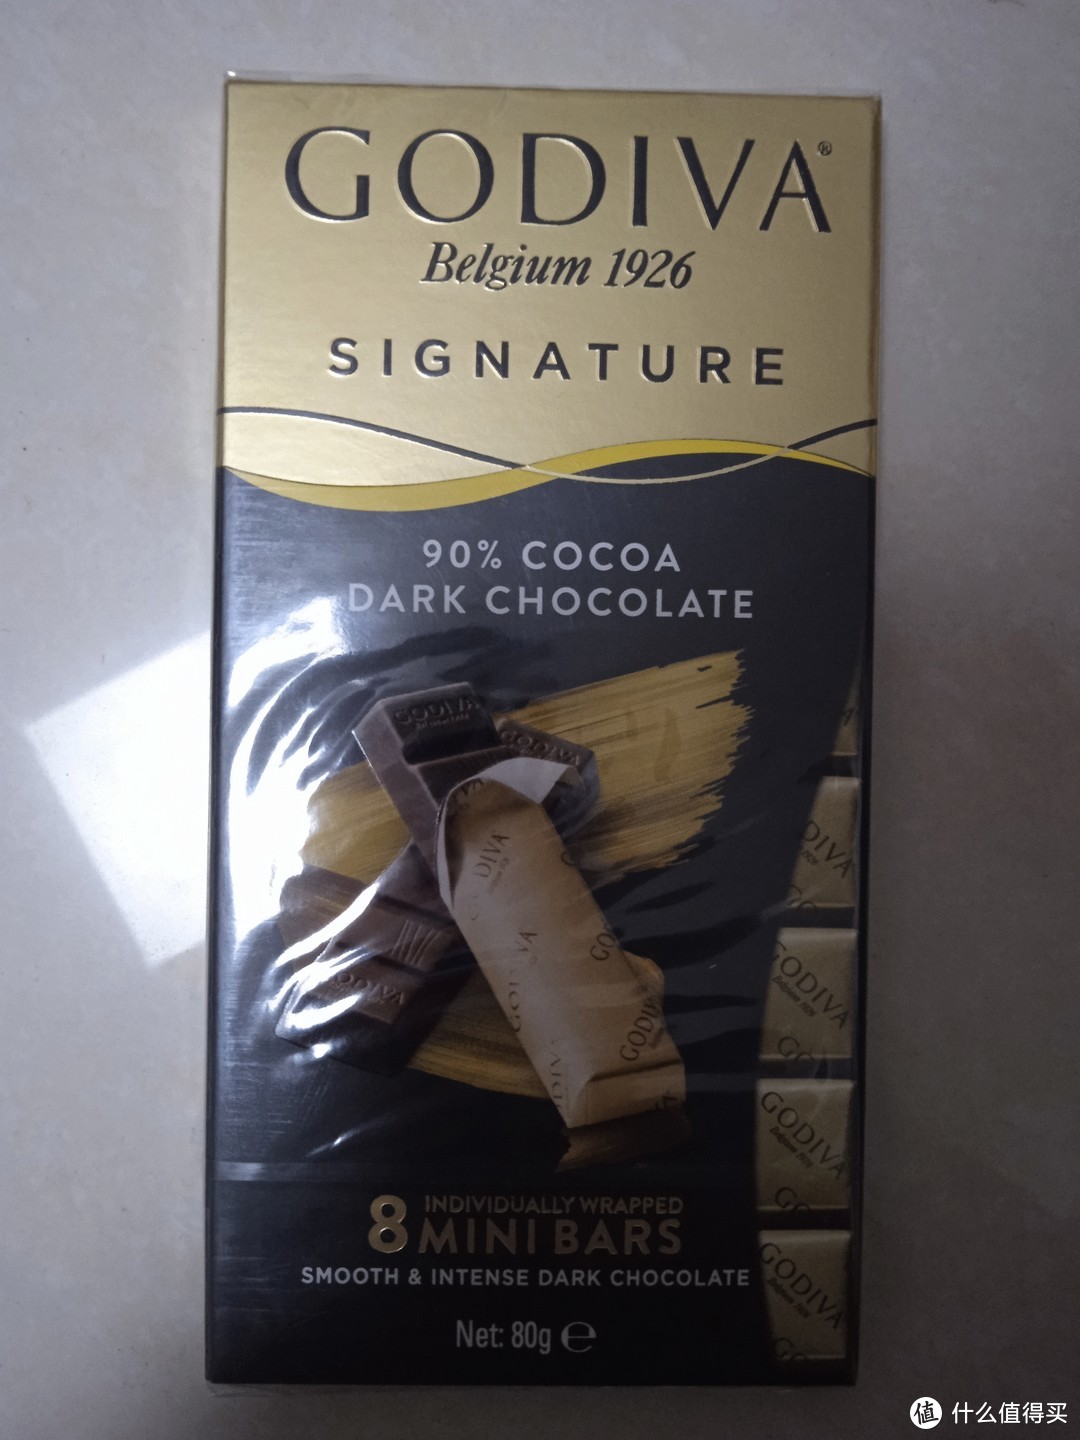 歌帝梵巧克力是我觉得最醇厚的巧克力了